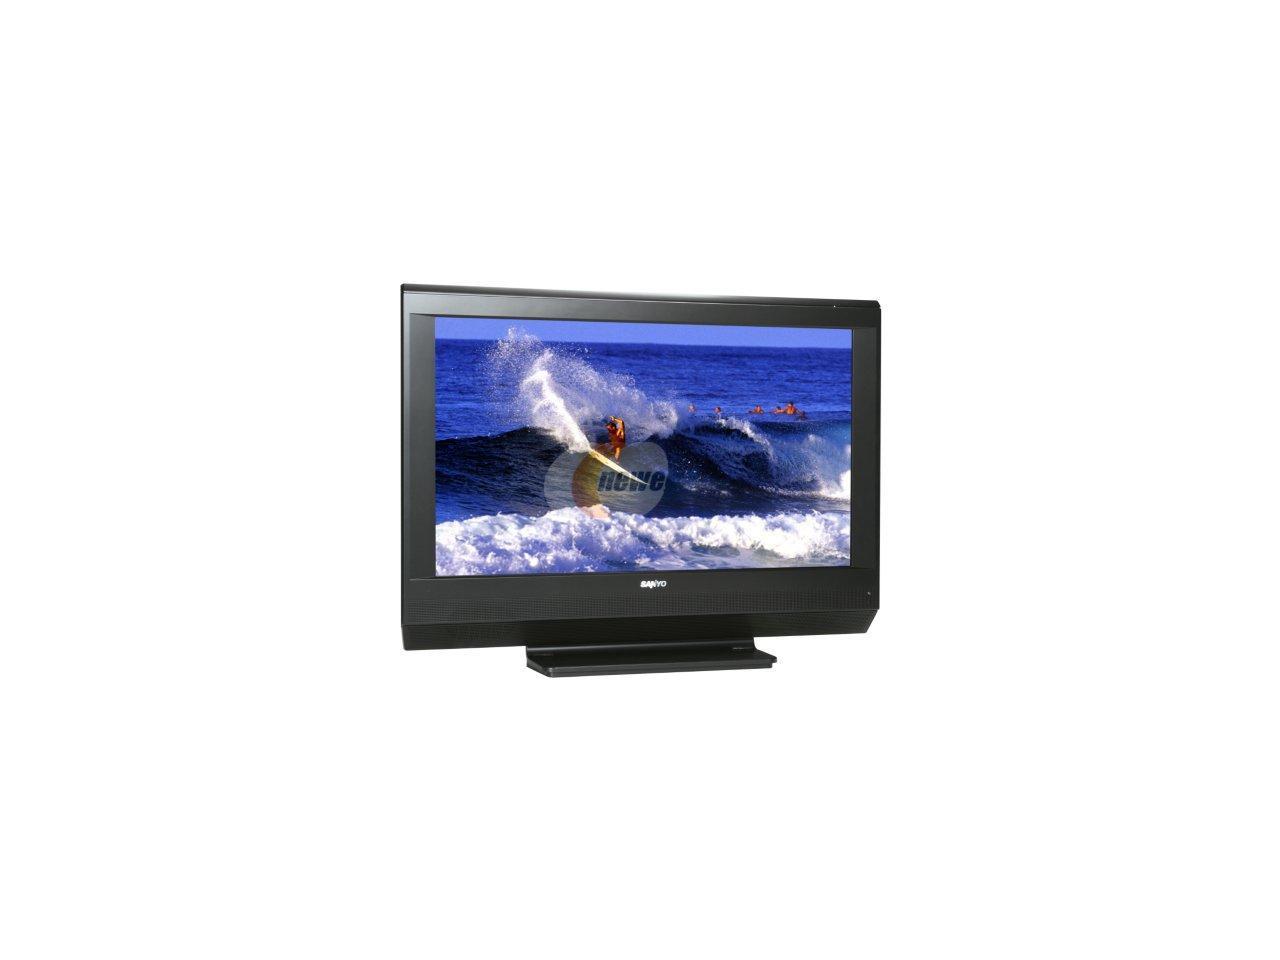 Refurbished: Sanyo 32" 720p LCD HDTV - Newegg.com